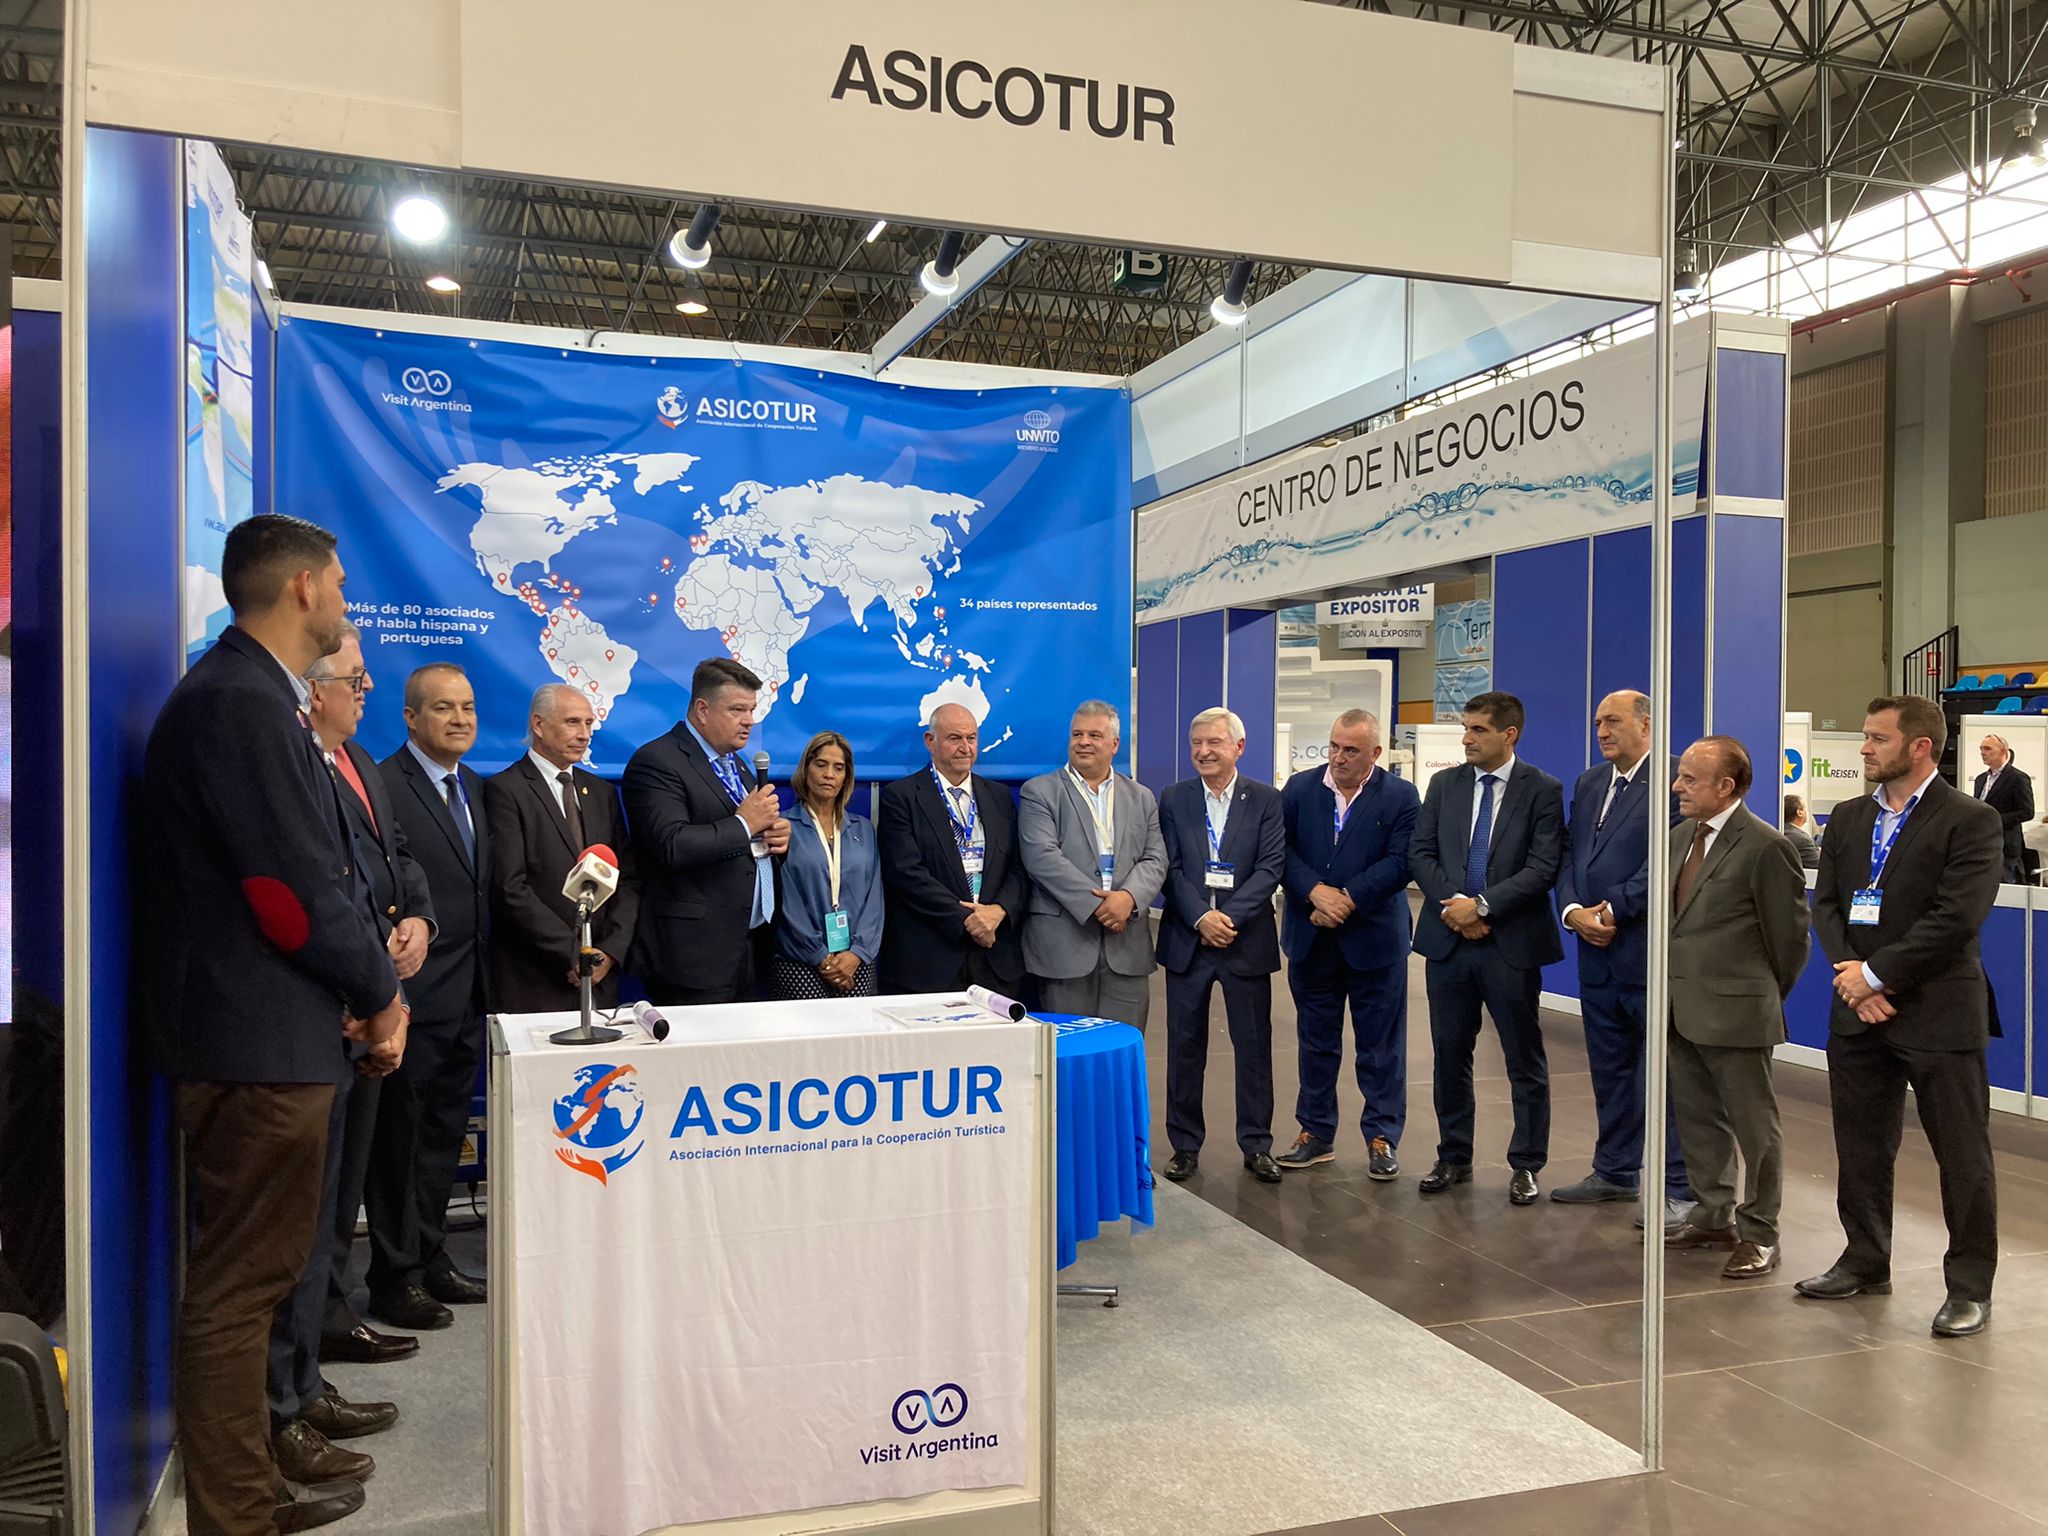 Concurrida presentación internacional de Asicotur con la presencia del INPROTUR y el Gobierno de Galicia